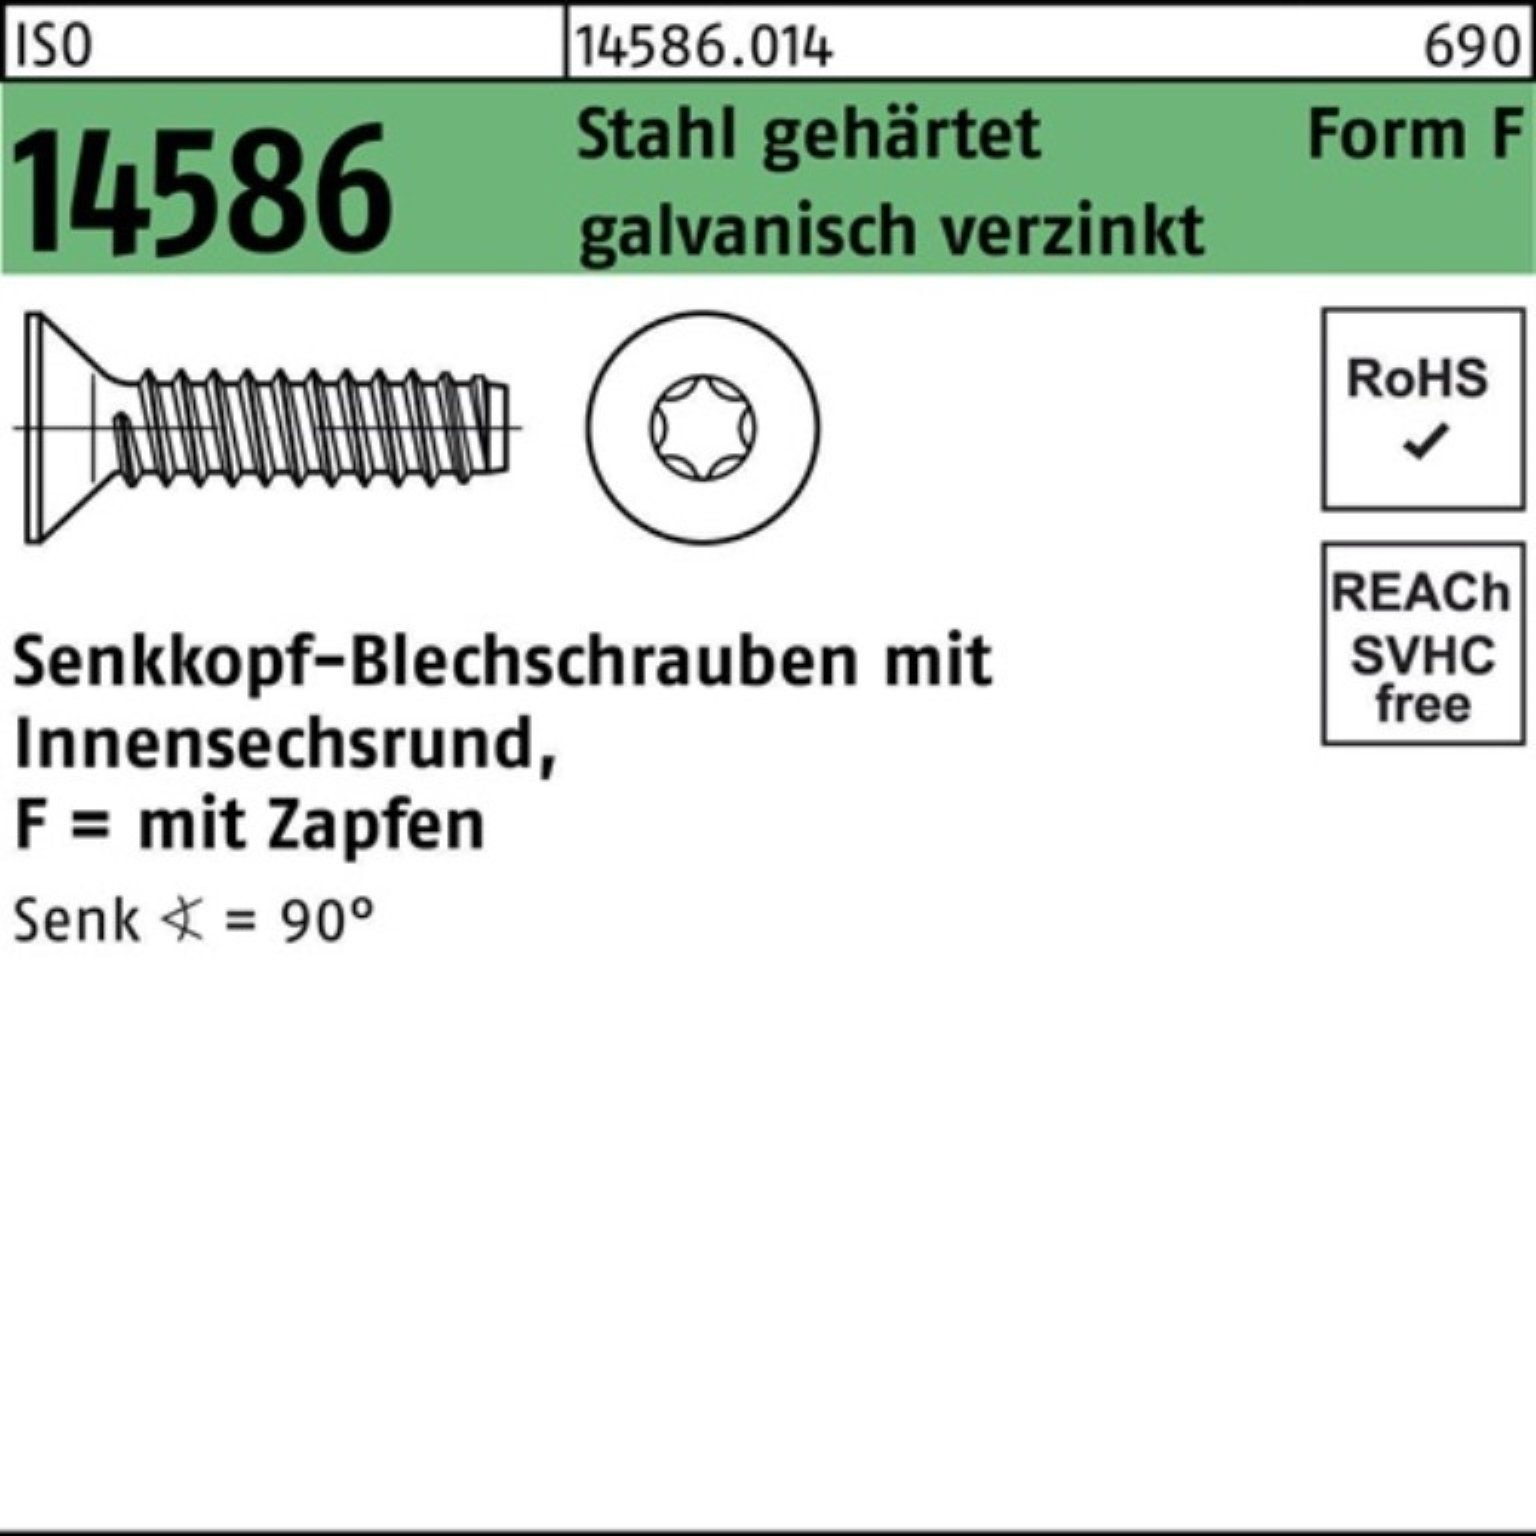 Reyher Schraube 250er Pack Senkblechschraube 6,3x38 14586 ISO geh. ISR/Zapfen -F Stahl